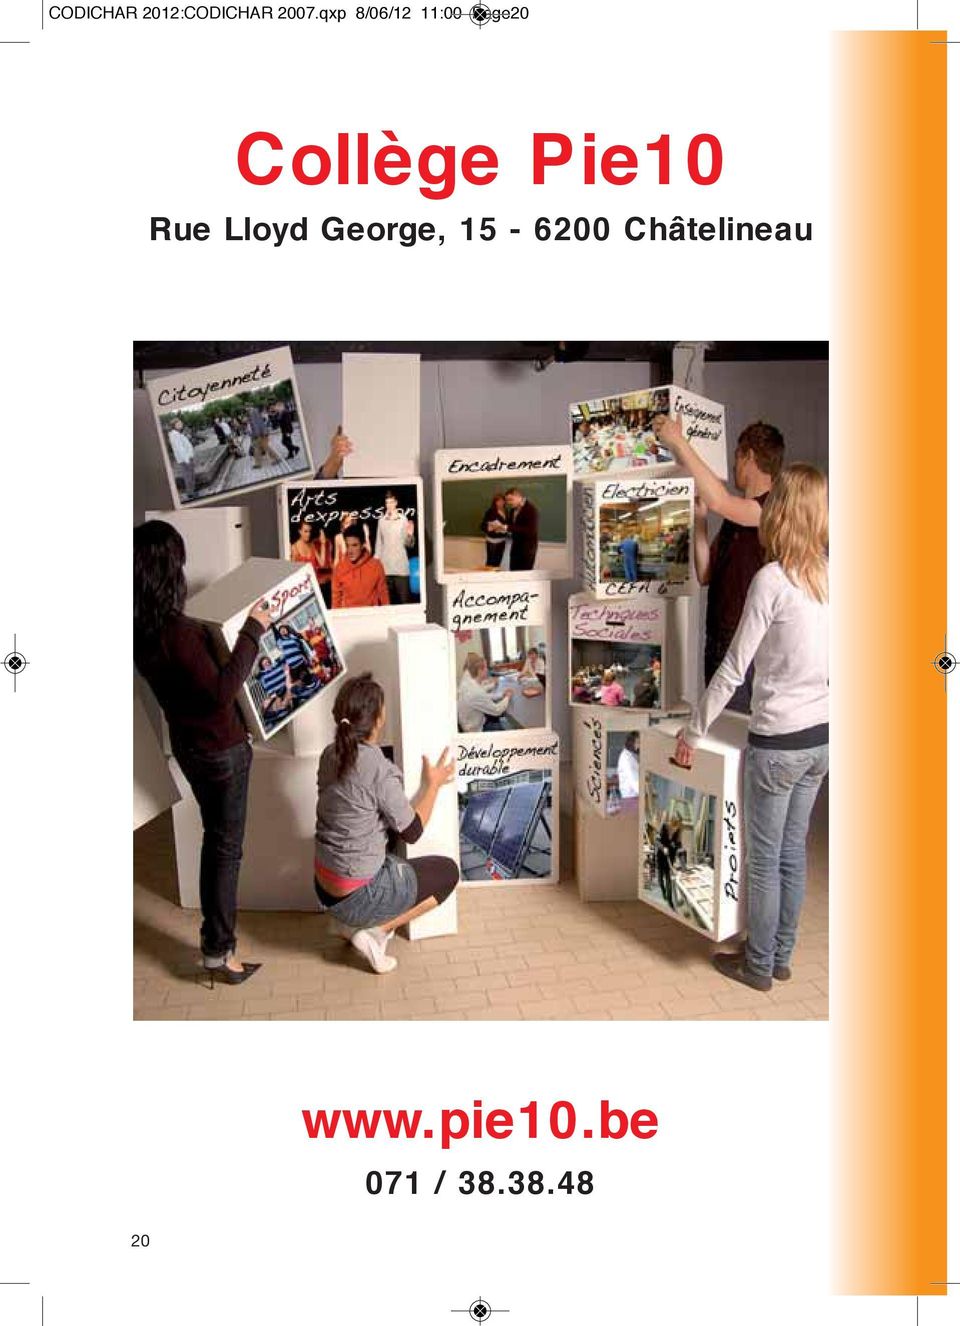 Pie10 Rue Lloyd George, 15-6200